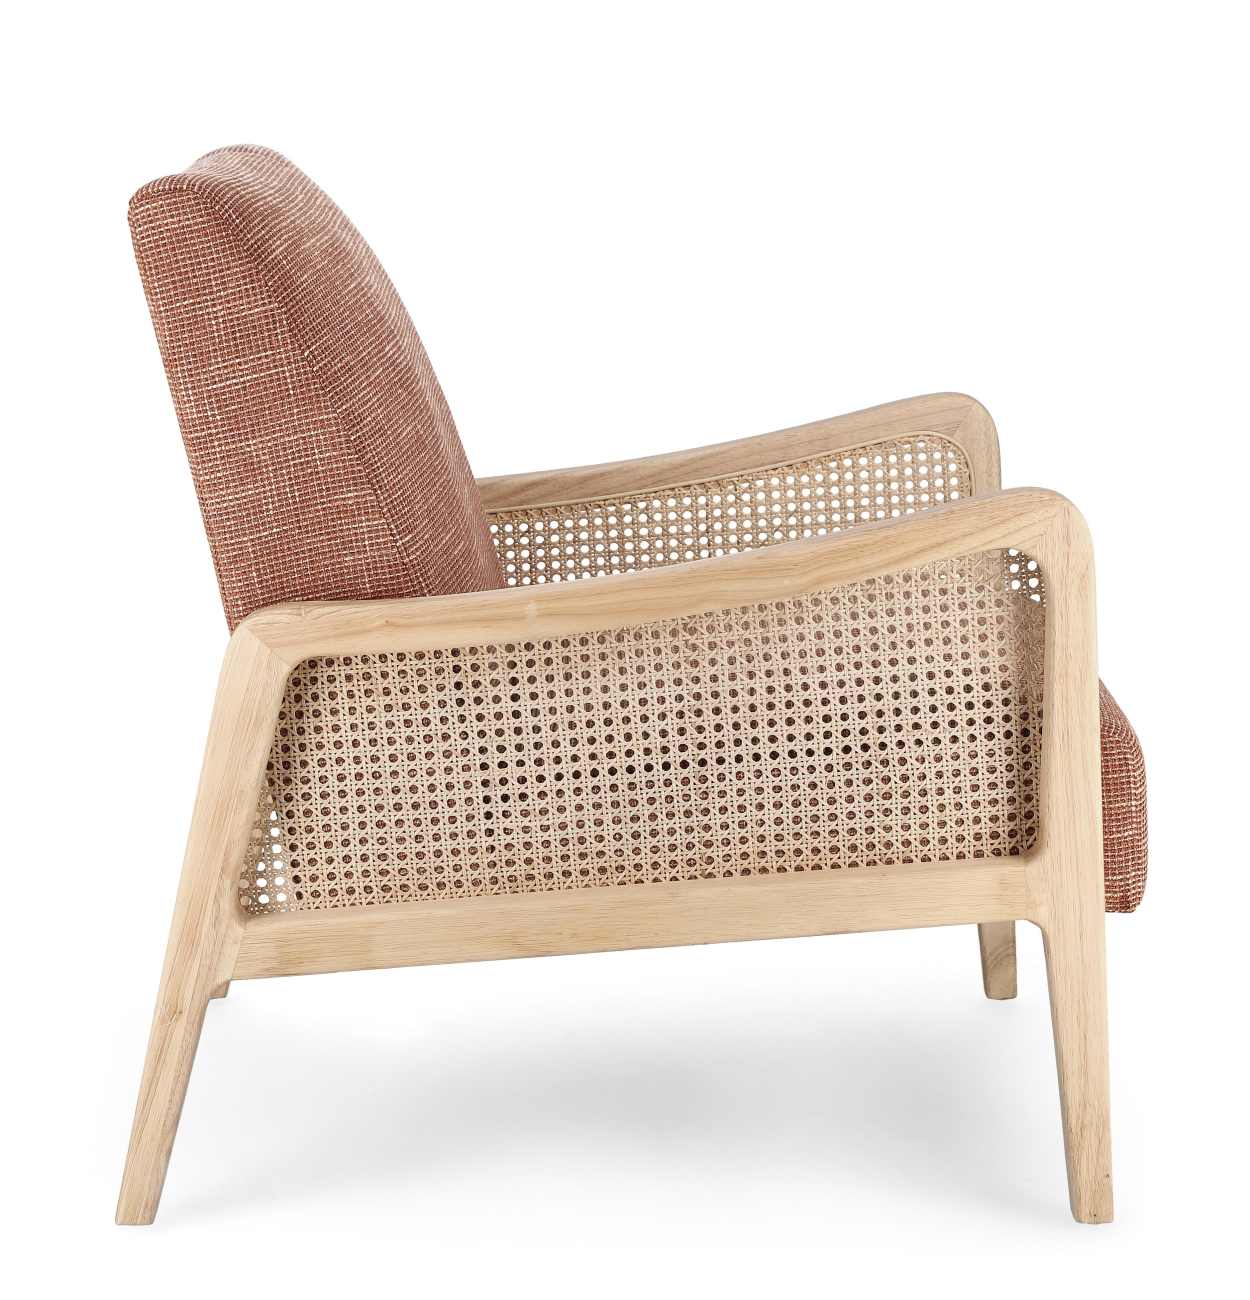 Der Sessel Deanna überzeugt mit seinem modernen Stil. Gefertigt wurde er aus einem Stoff-Bezug, welcher einen roten Farbton besitzt. Das Gestell ist aus Kautschukholz und hat eine natürliche Farbe. Der Sessel verfügt über eine Armlehne.